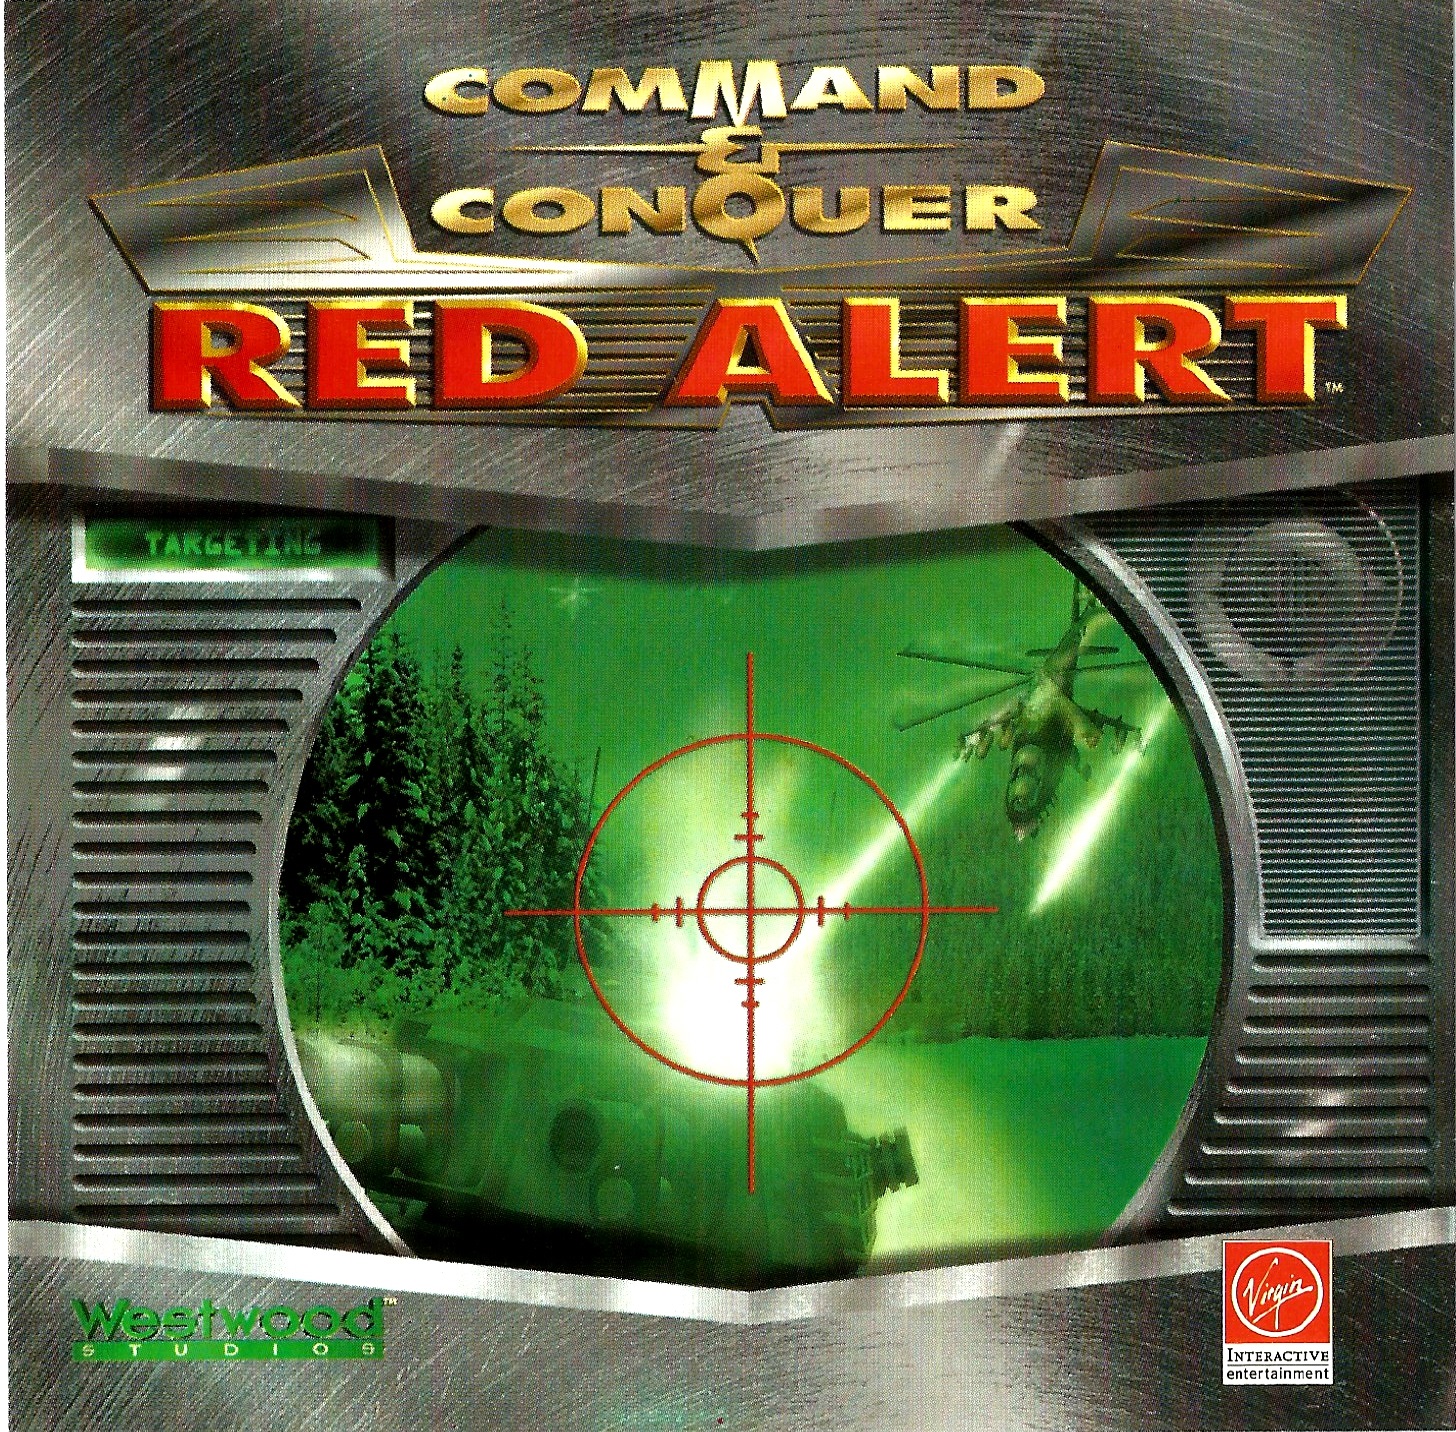 Red alert soundtrack. Red Alert ps1. Red Alert 1. Command and Conquer Red Alert ps1. Command Conquer Red Alert 1996.